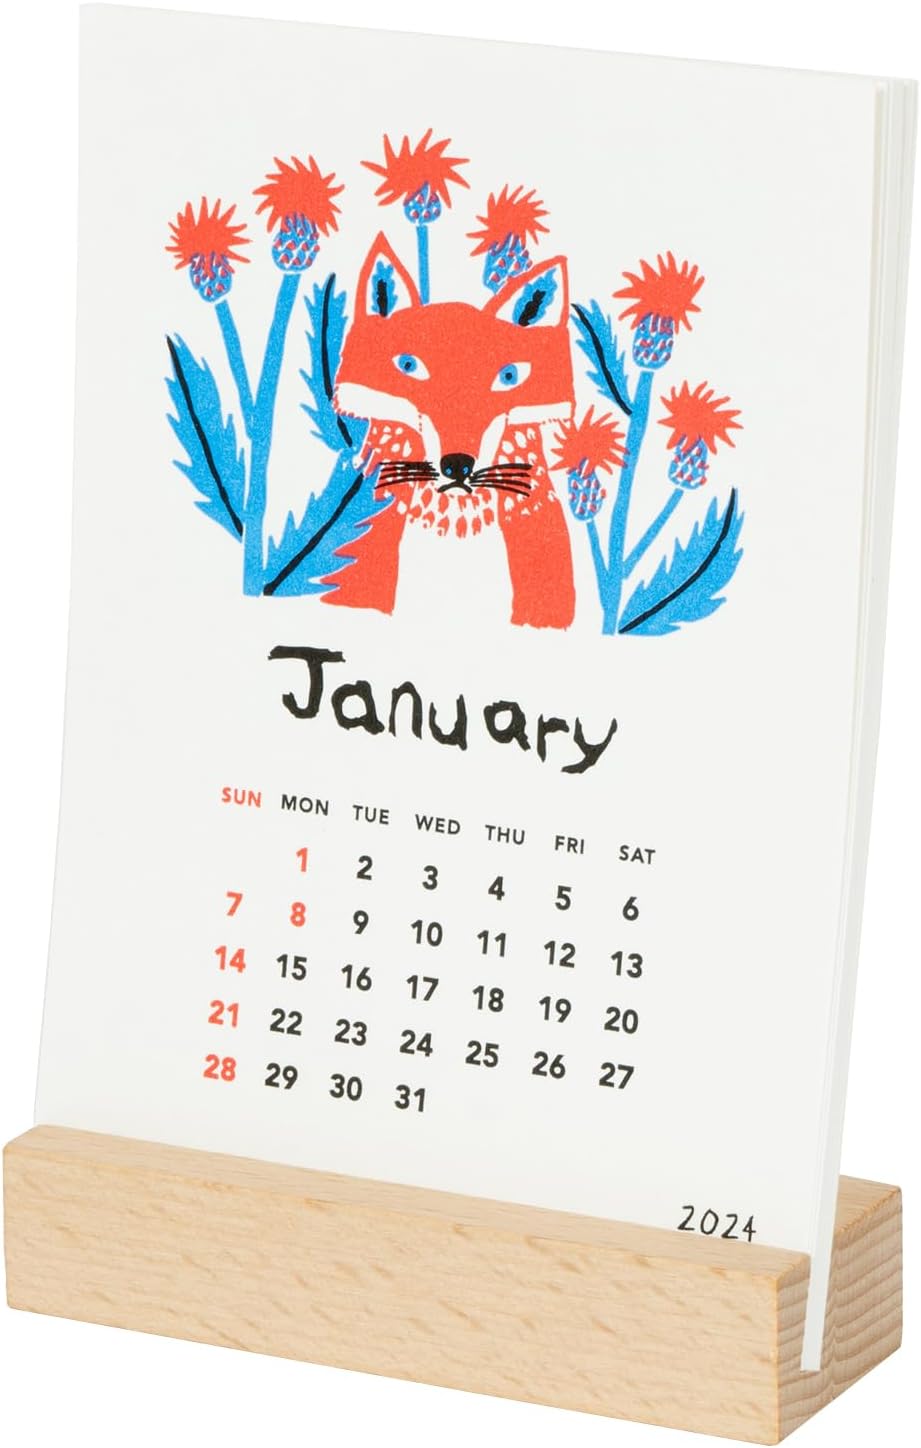 ミロコマチコが描く動物たちを活版印刷で生き生きと表現した、おしゃれな卓上カレンダー2024年版